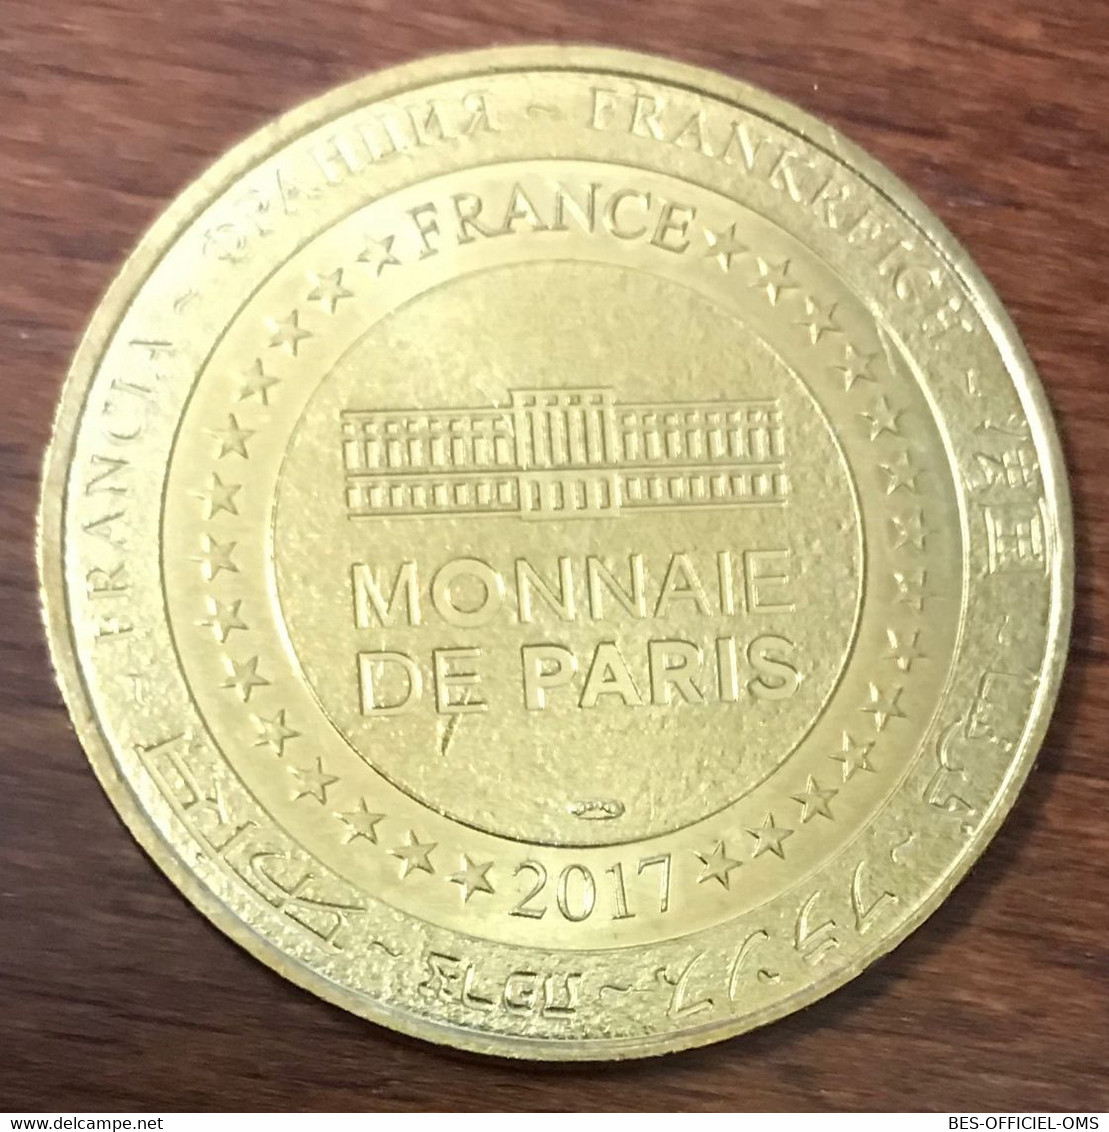 30 GROTTE DE LA COCALIÈRE 50 ANS MDP 2017 MEDAILLE SOUVENIR MONNAIE DE PARIS JETON TOURISTIQUE MEDALS COIN TOKENS - 2017